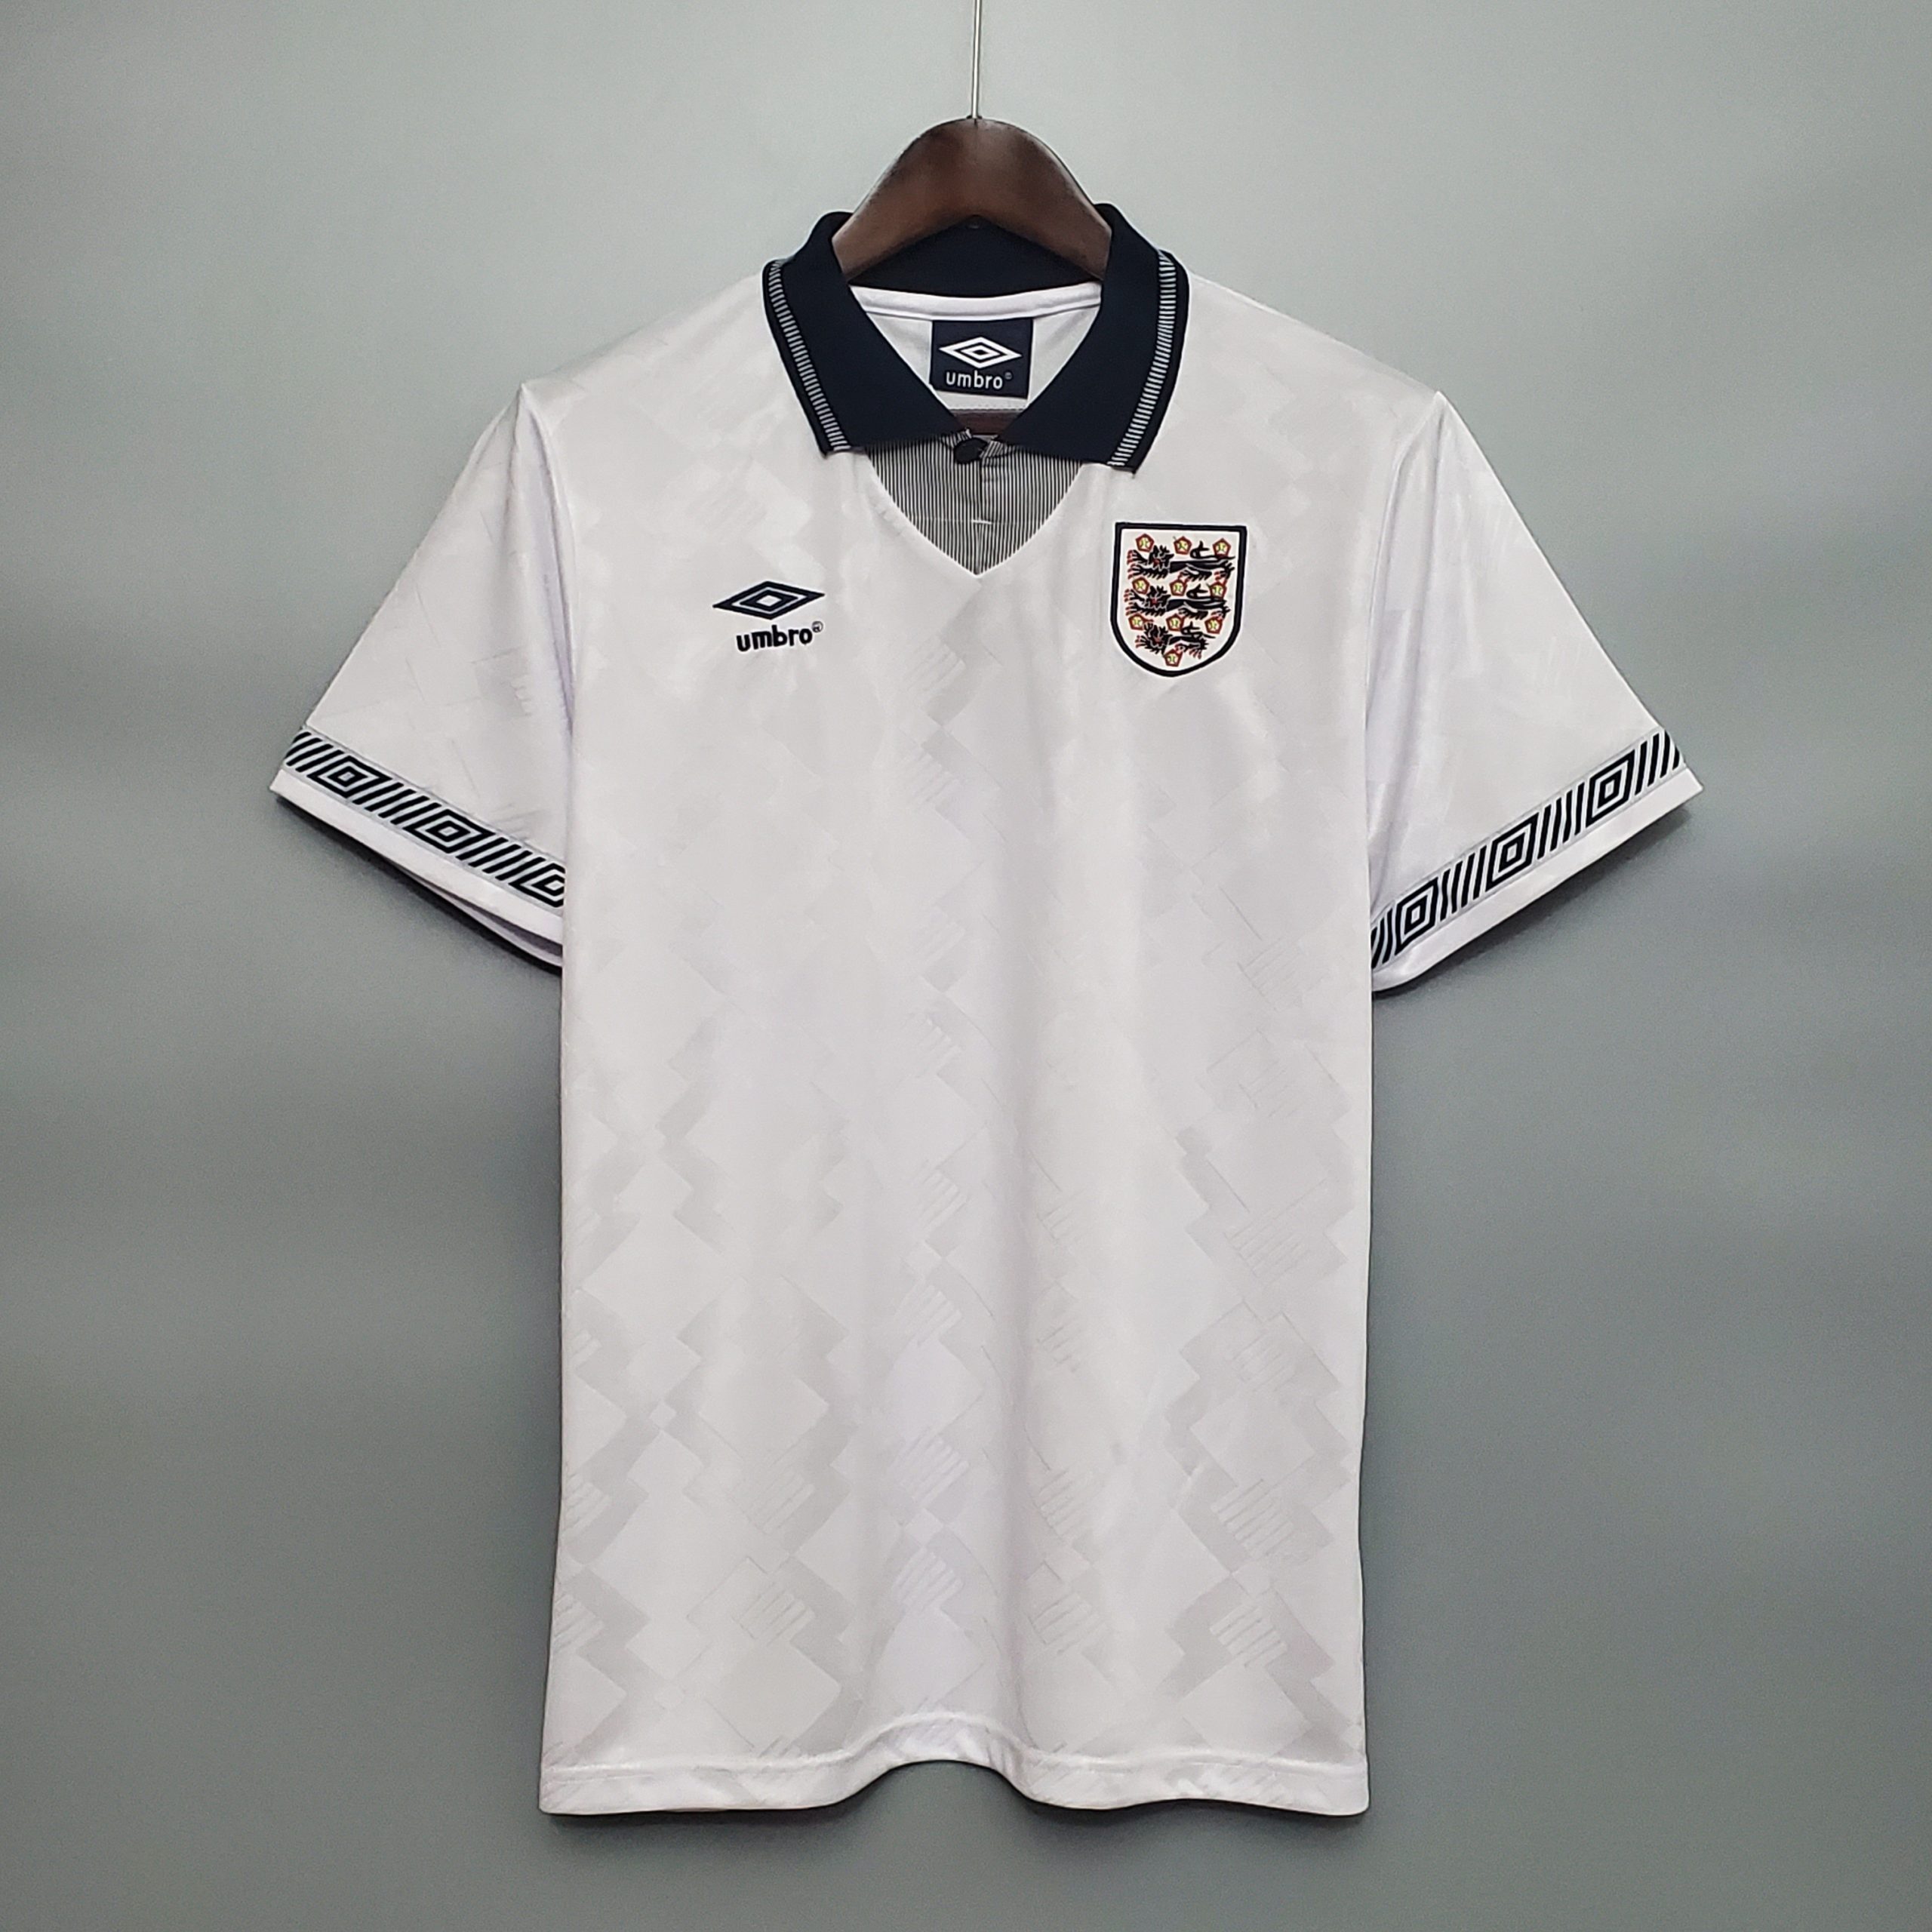 Replica England Football Shirts | lupon.gov.ph